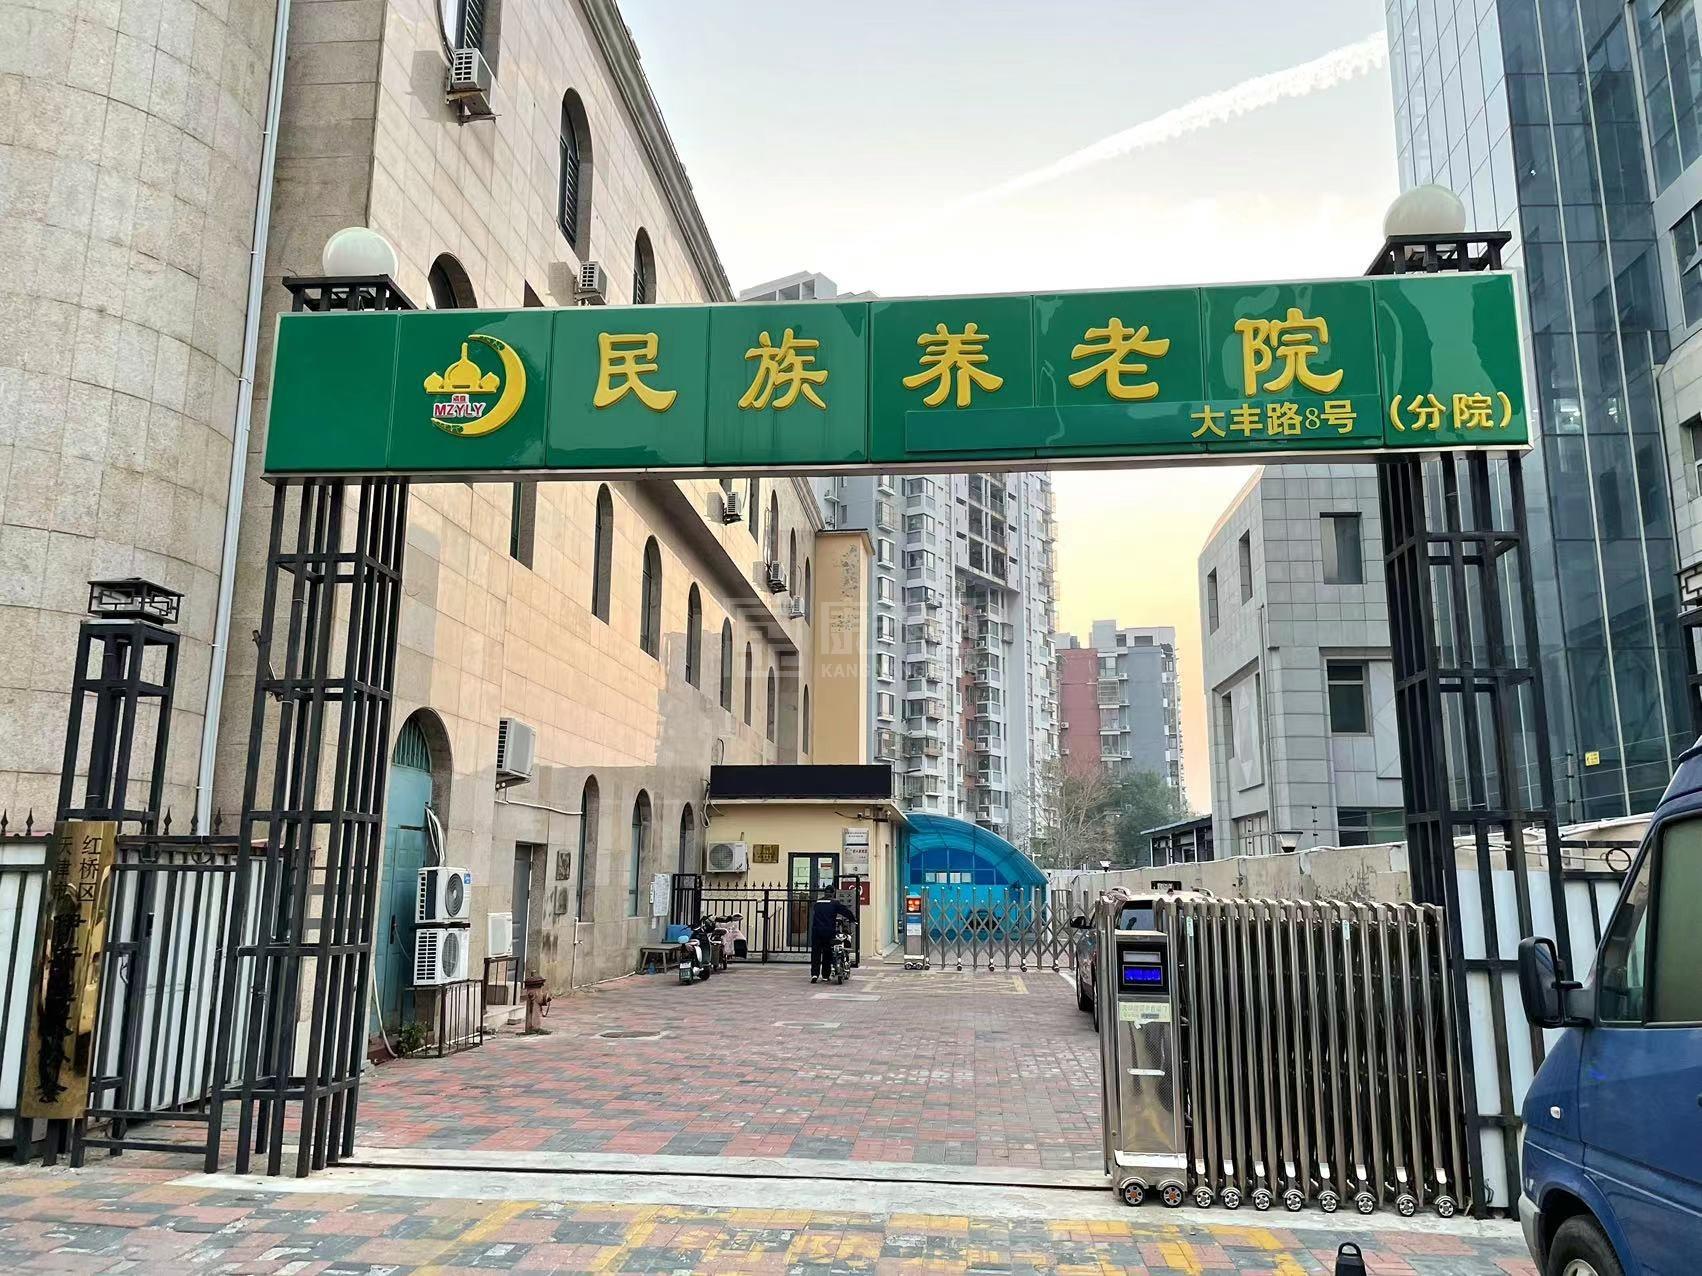 天津市红桥区民族养老院分院服务项目图3惬意的环境、感受岁月静好